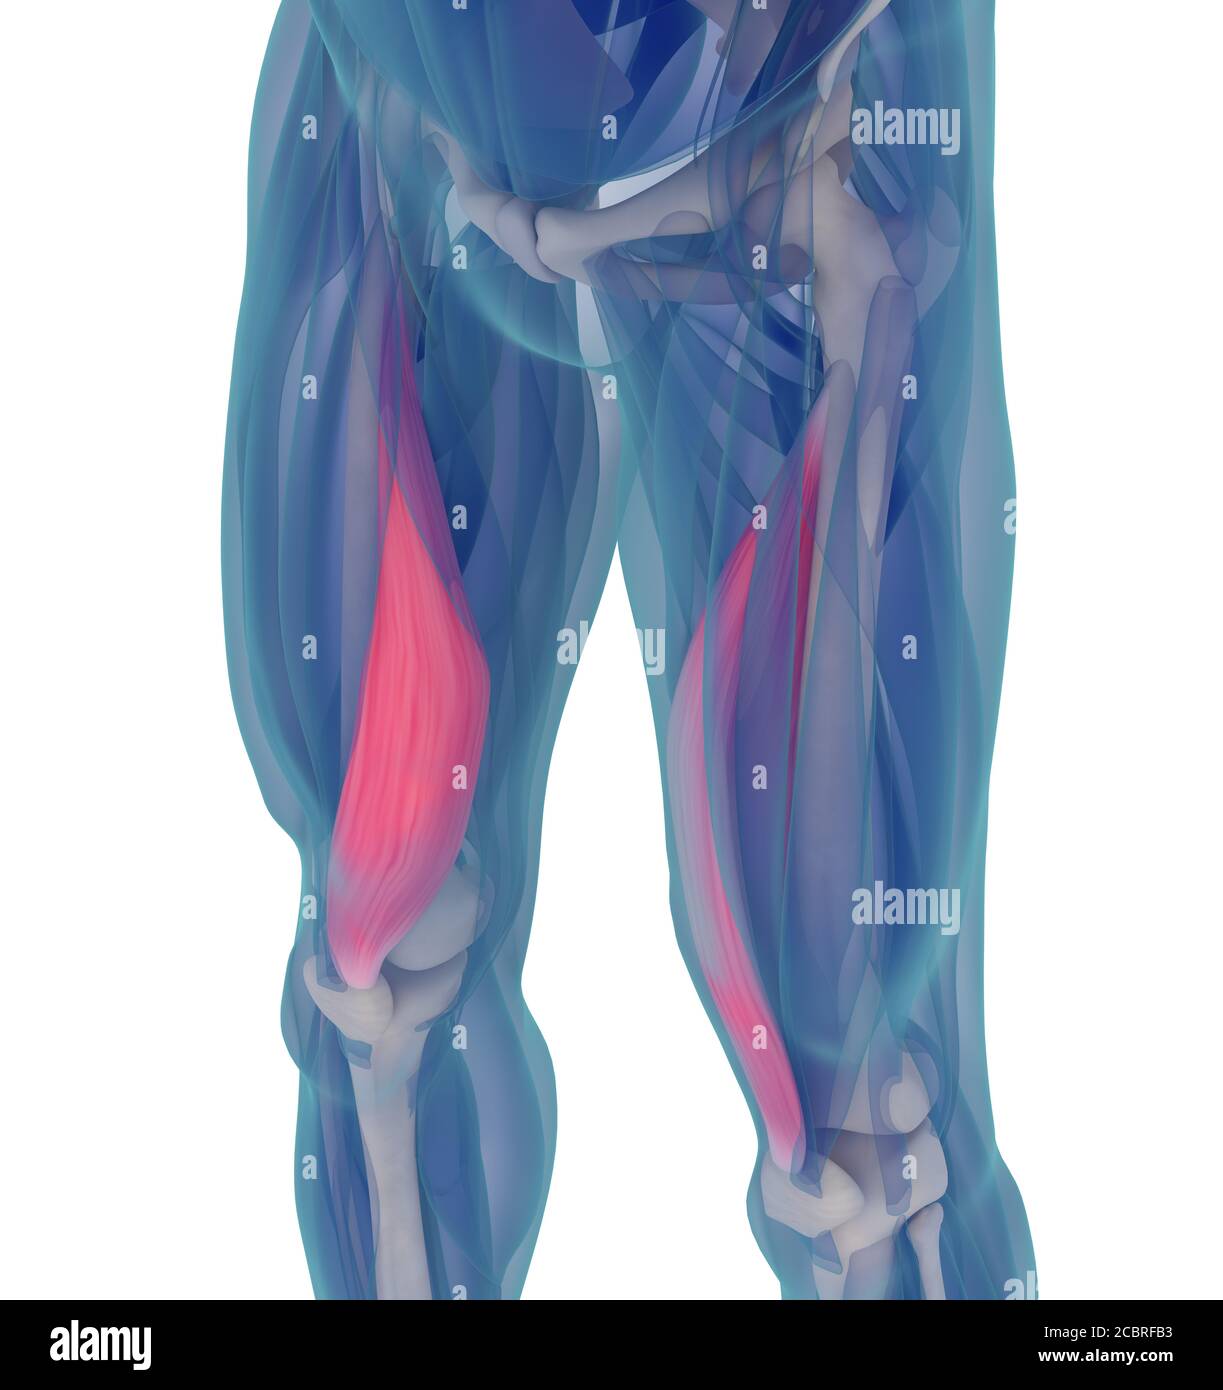 Medizinische Muskeldarstellung des Vastus medialis. 3d-Illustration Stockfoto